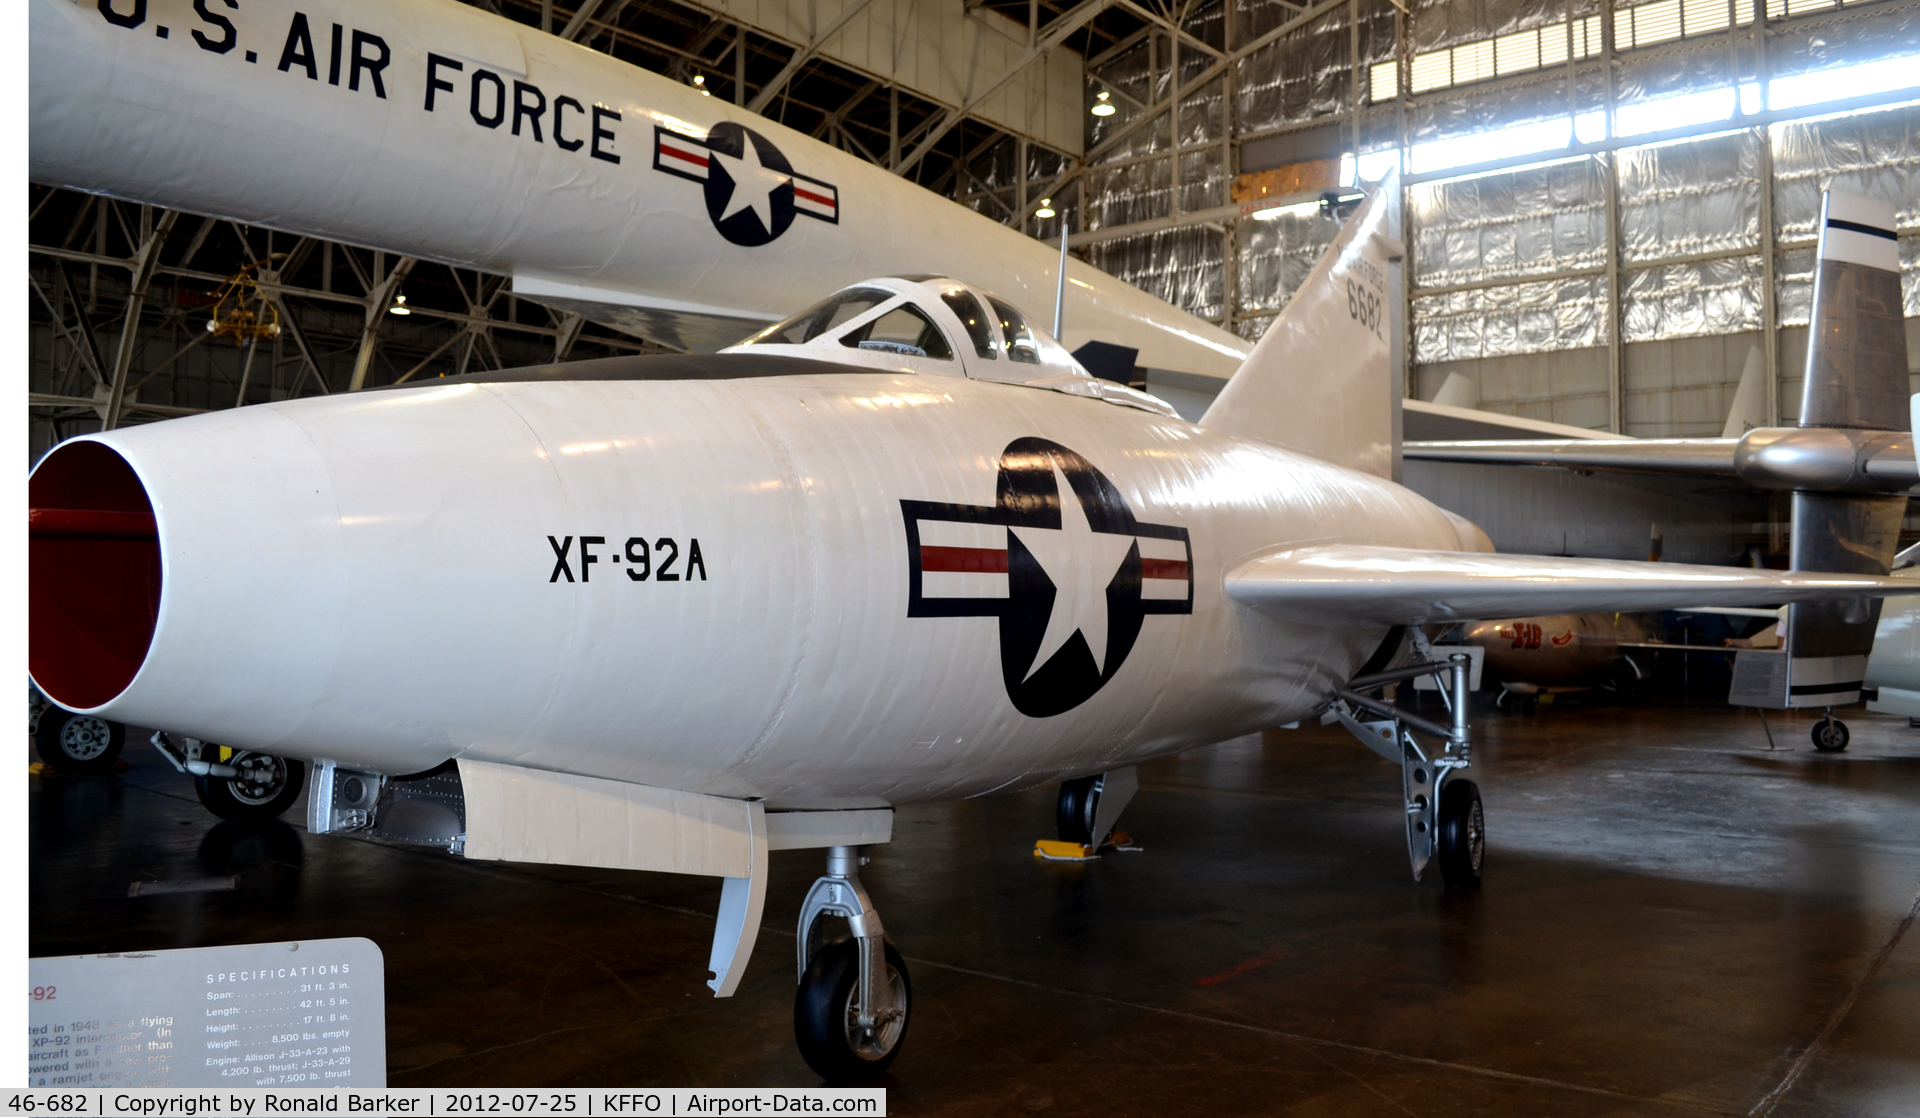 46-682, 1948 Convair XF-92A C/N 7-002, AF Museum